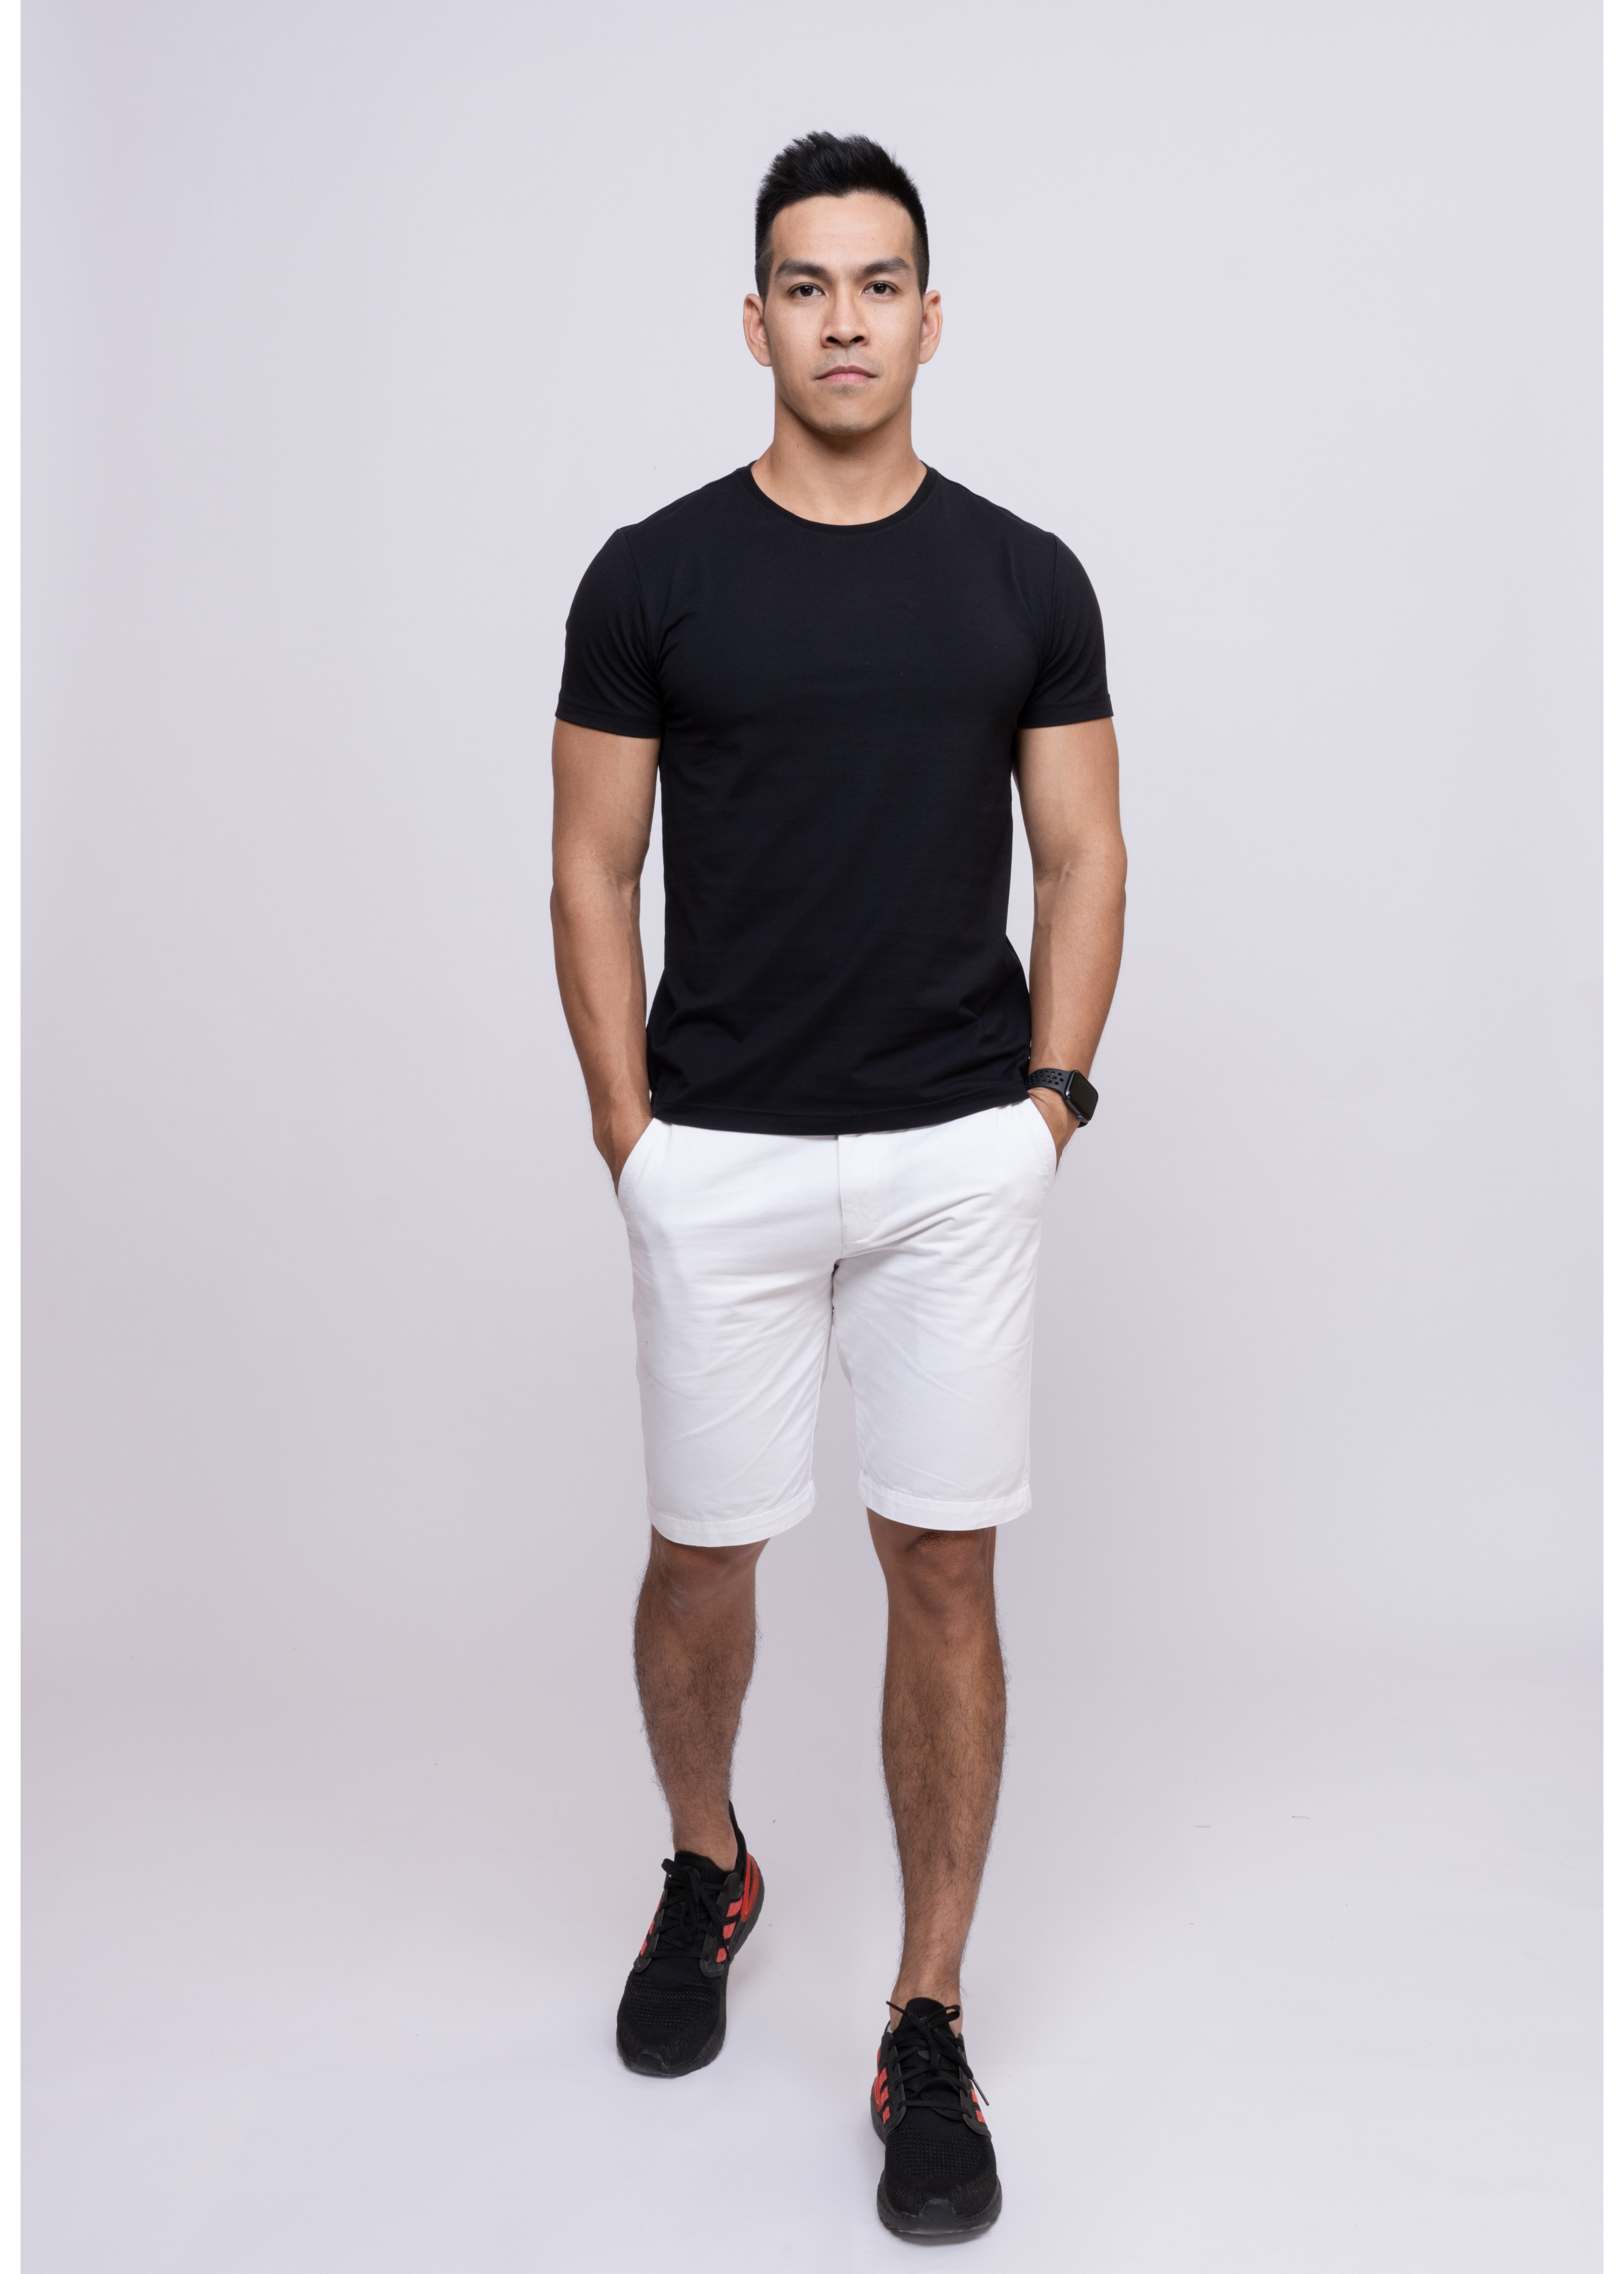 Áo thun t - shirt nam kiểu dáng ngắn tay ôm body trẻ trung chất cotton mềm mát thương hiệu Fezzio